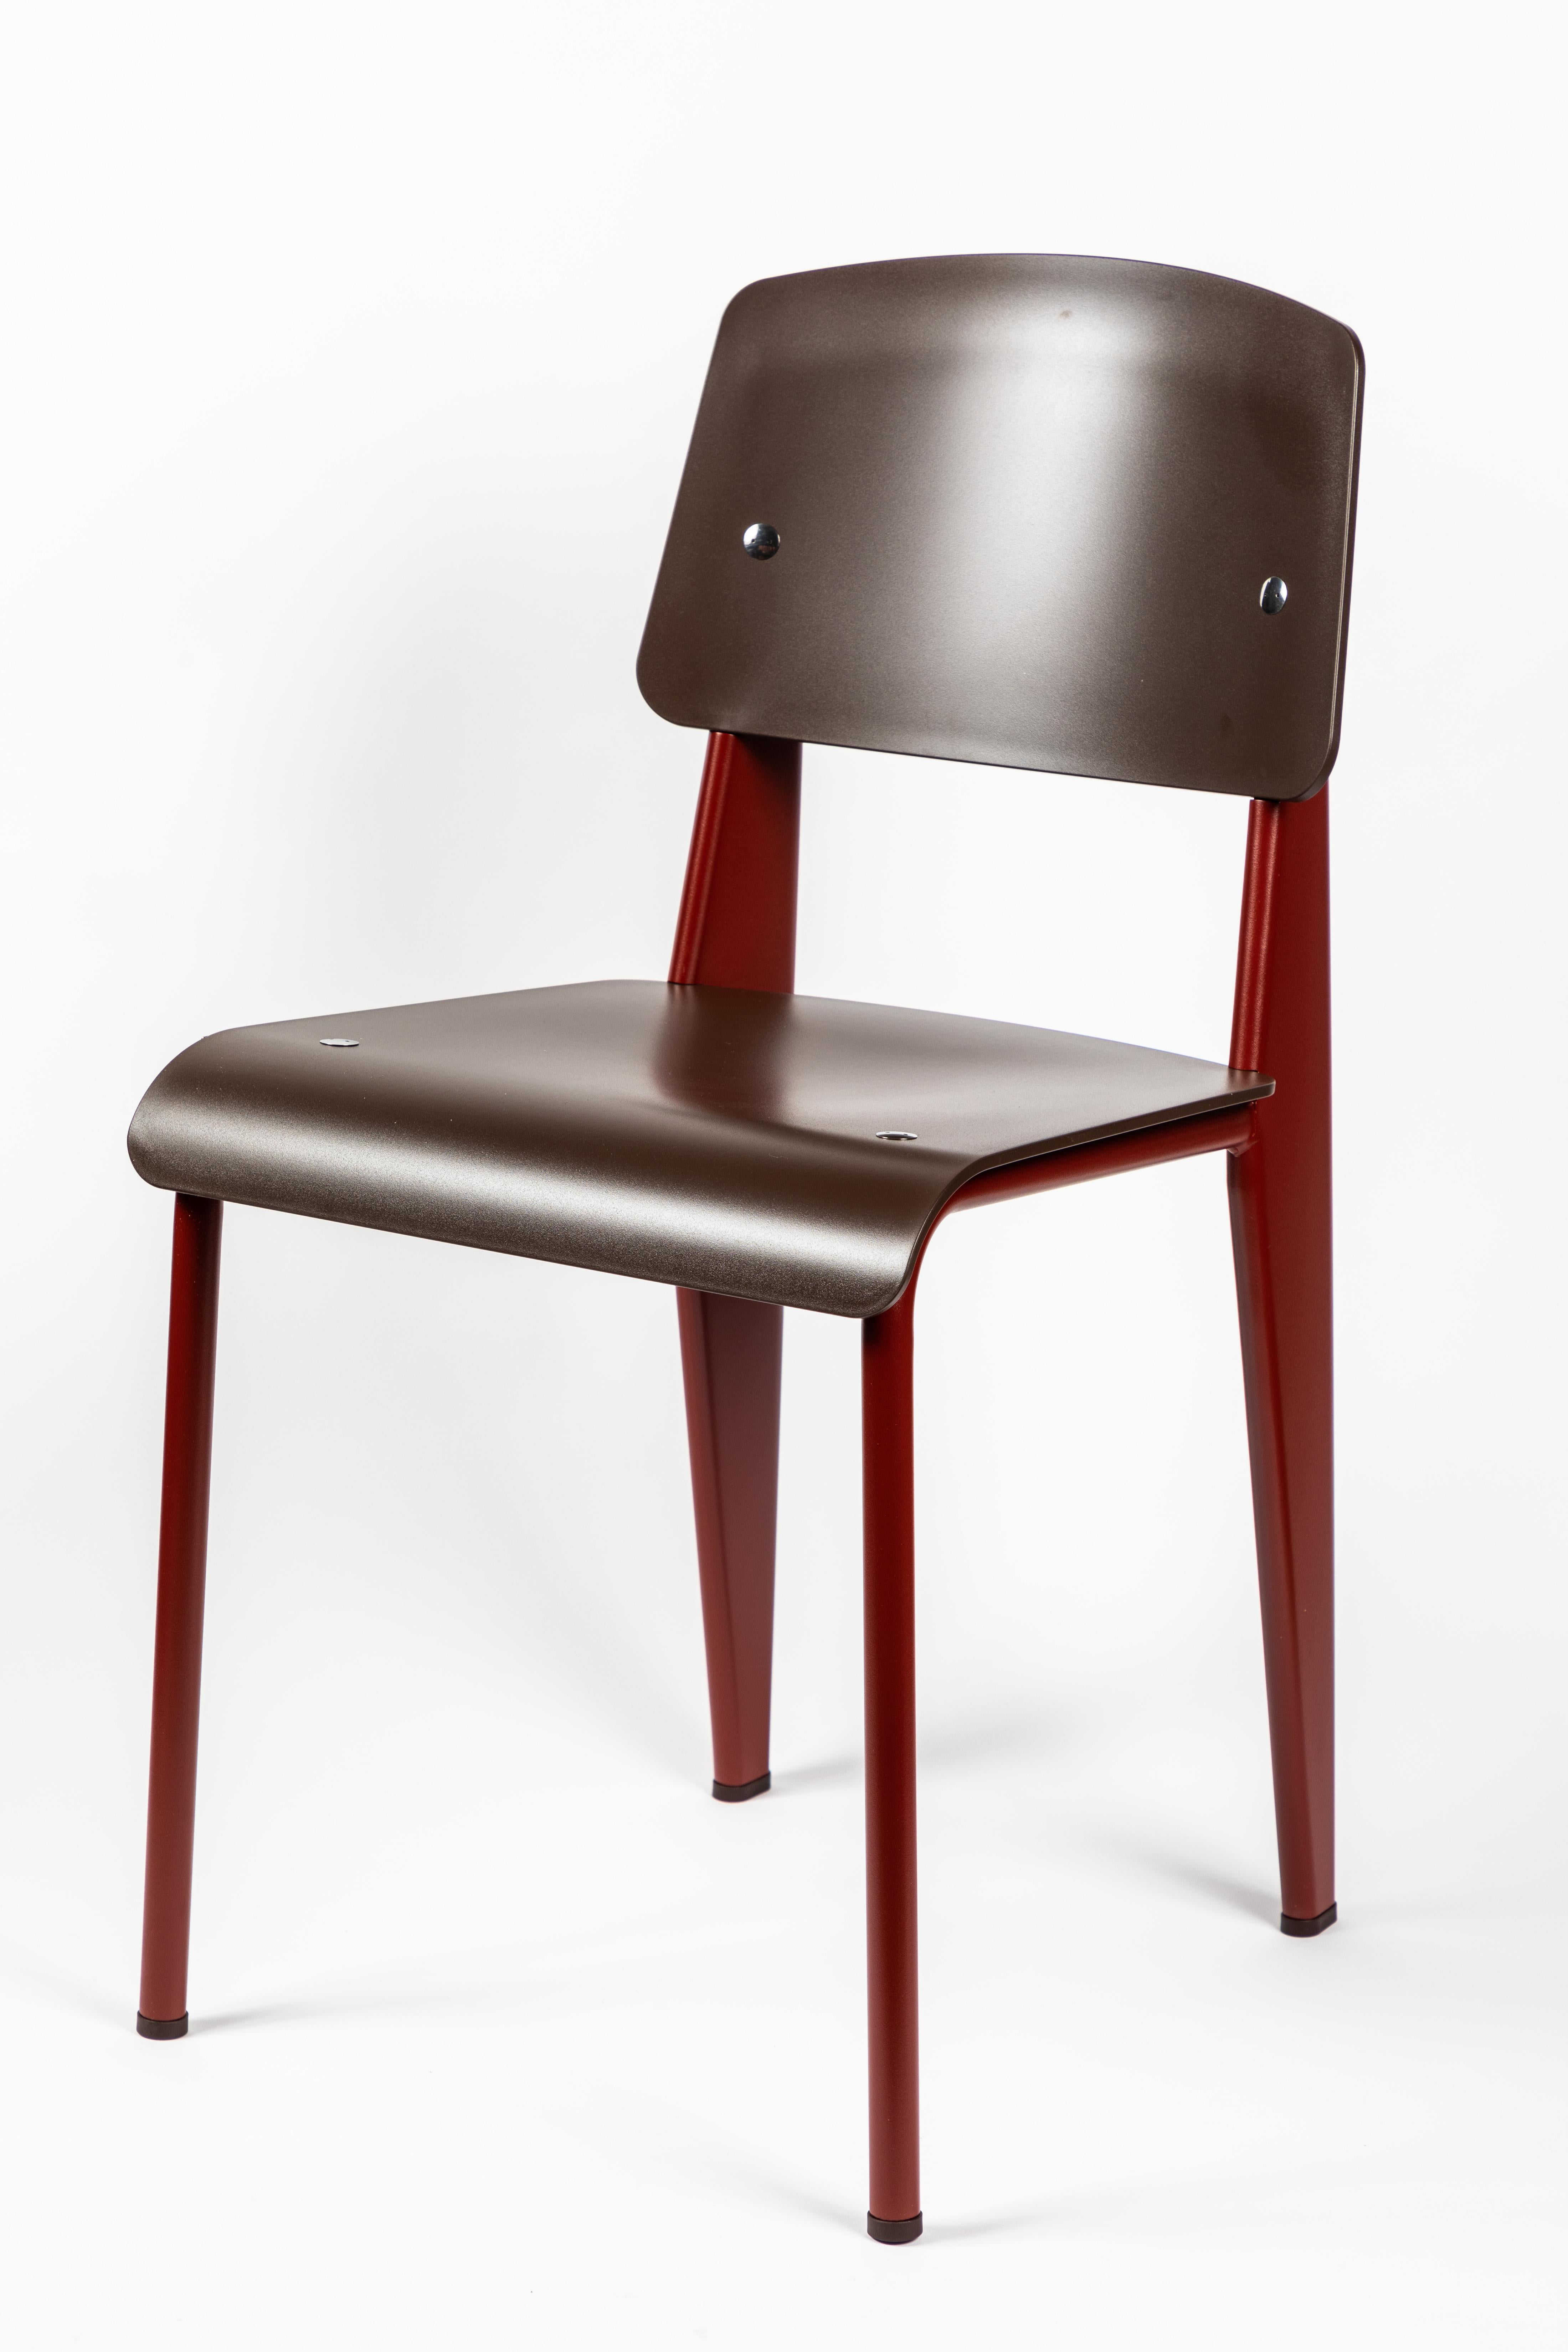 6 Stühle Jean Prouvé Standard SP in Teak Brown und Rot für Vitra 1